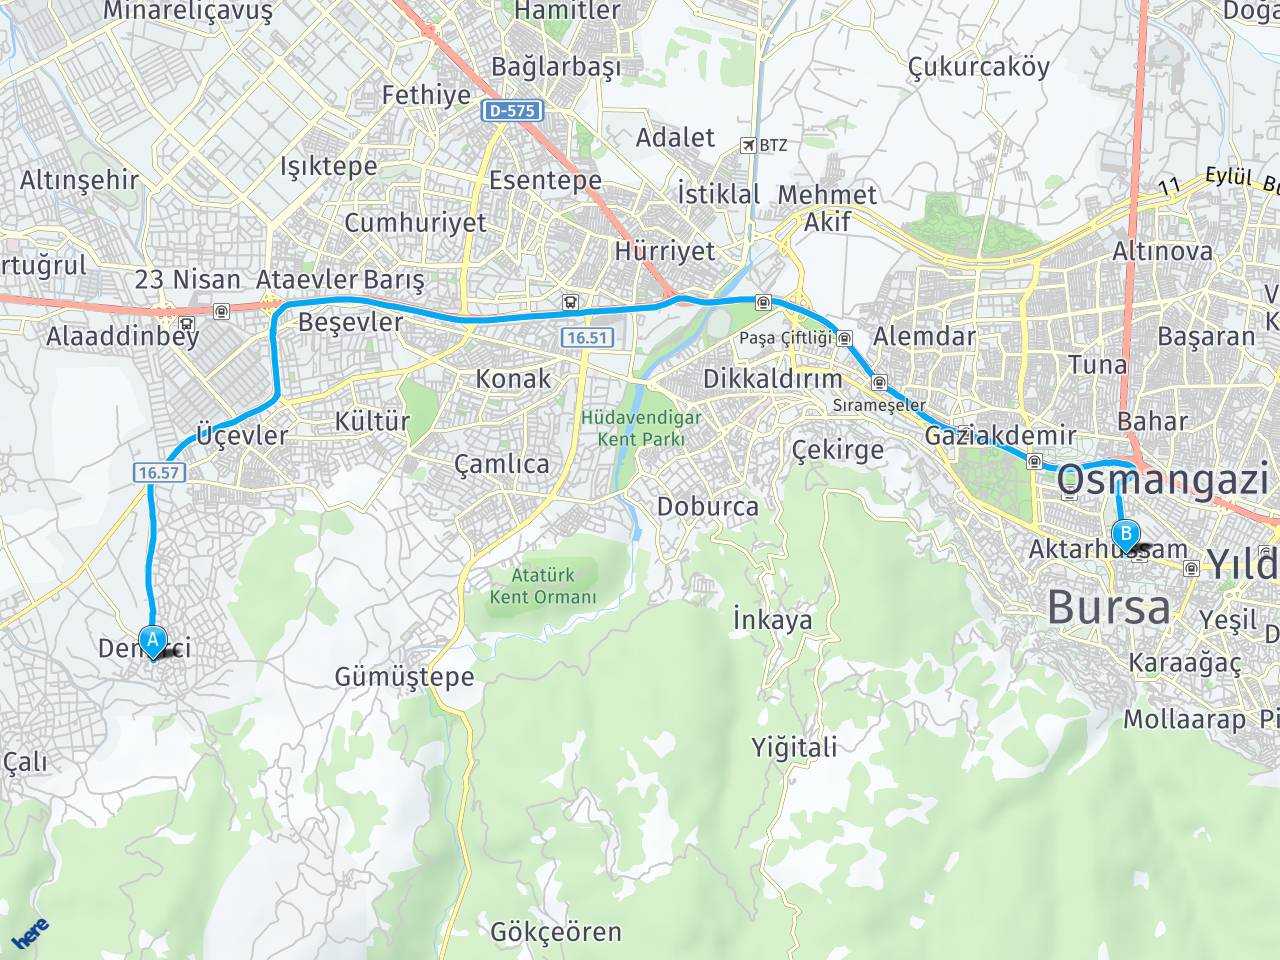 Bursa Nilüfer Demirci Mah. Bursa haritası